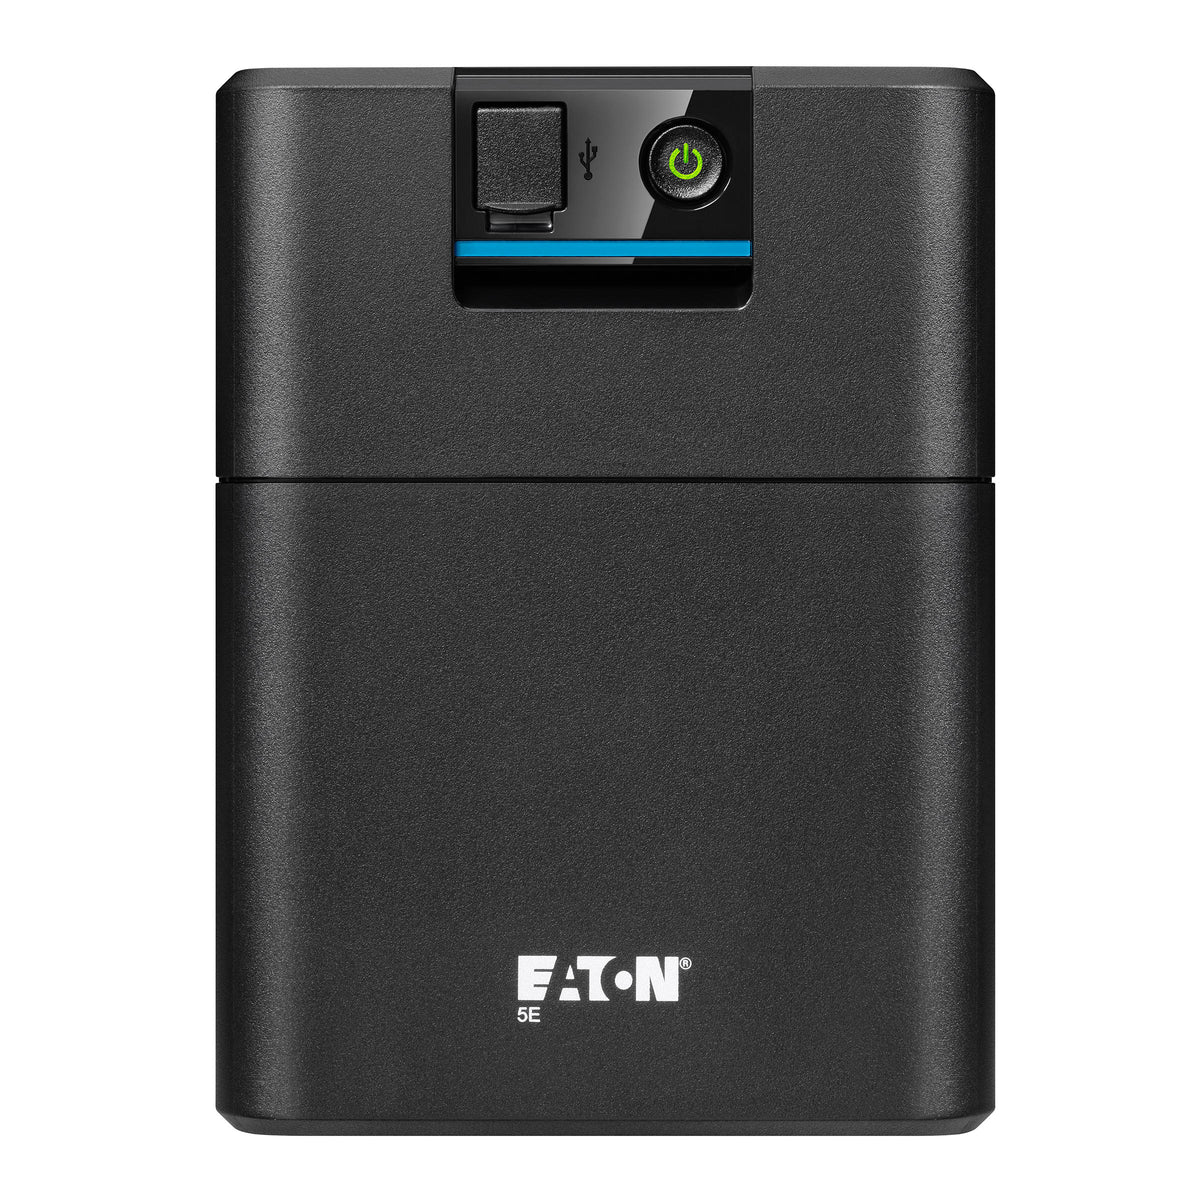 Eaton 5E UPS USB - 5E1100IUSB